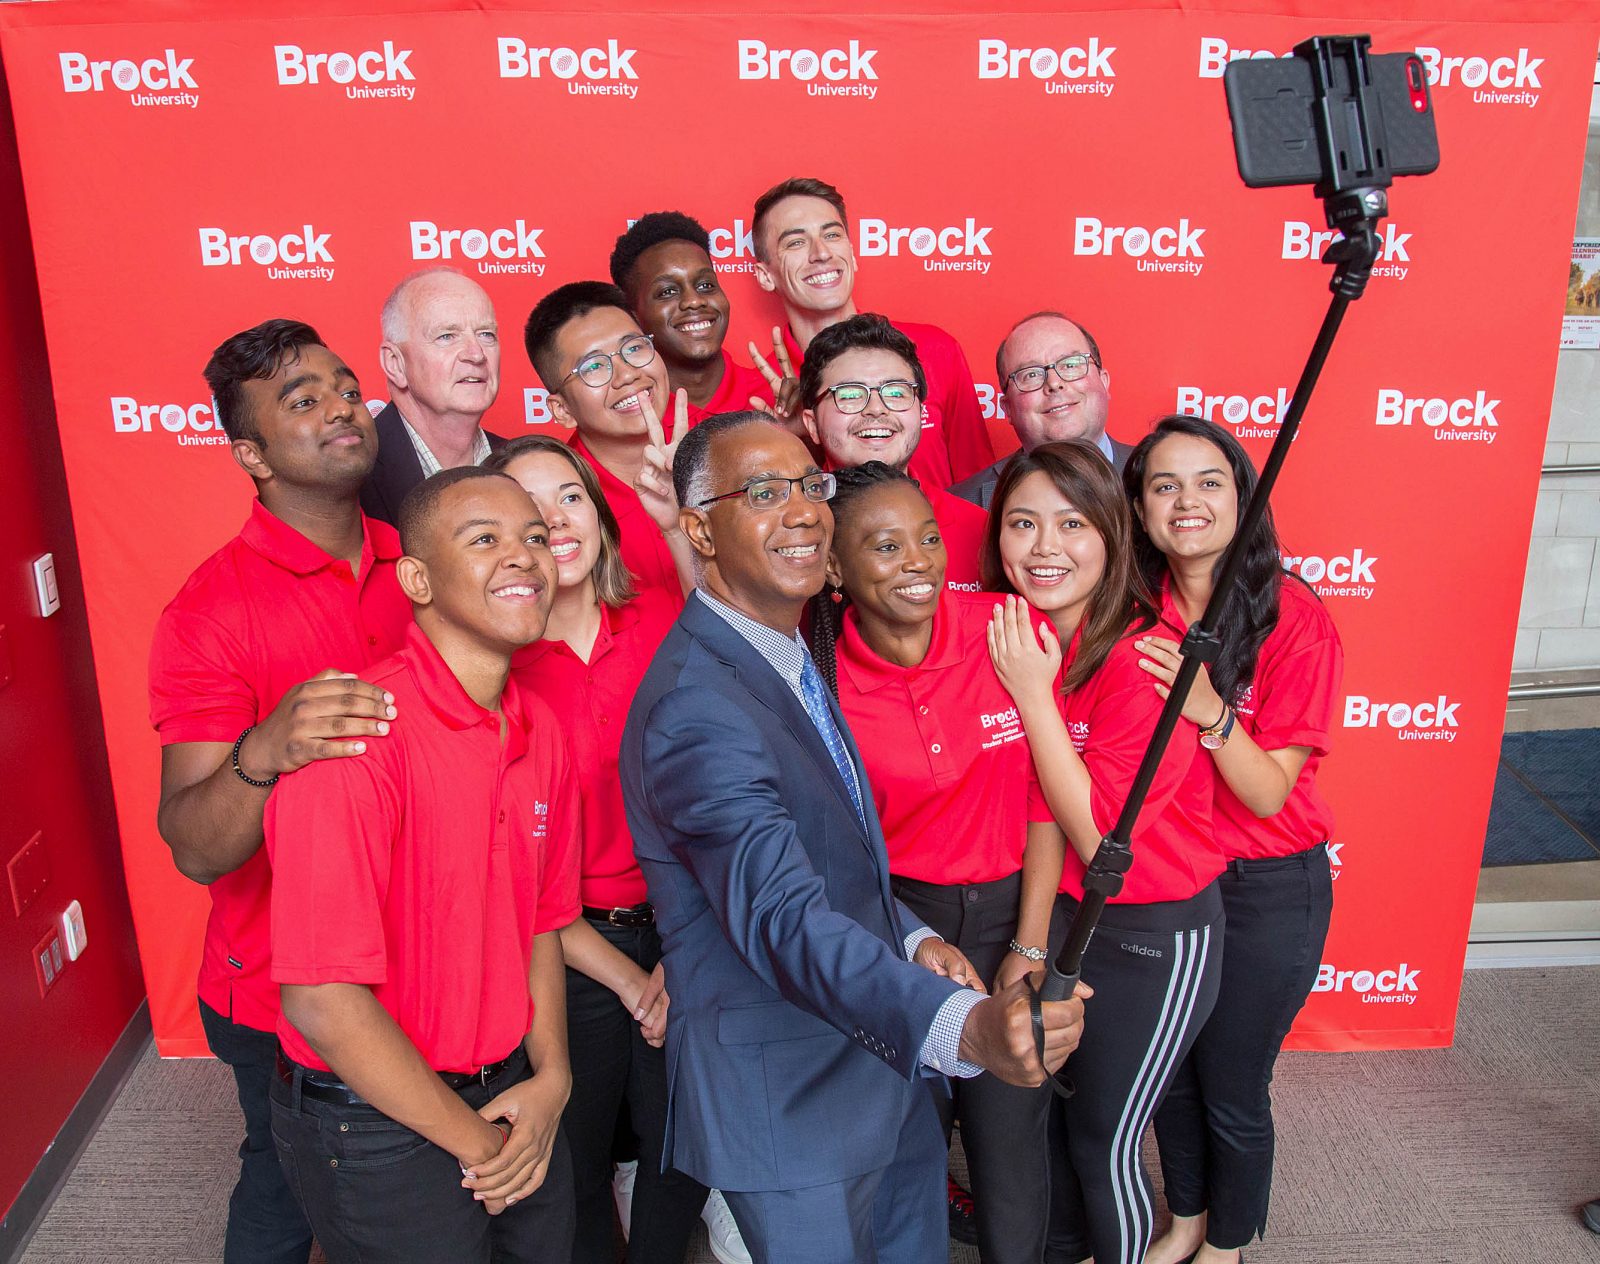 Rất nhiều chương trình học tại Brock University có Co-op - Chương trình thực tập hưởng lương